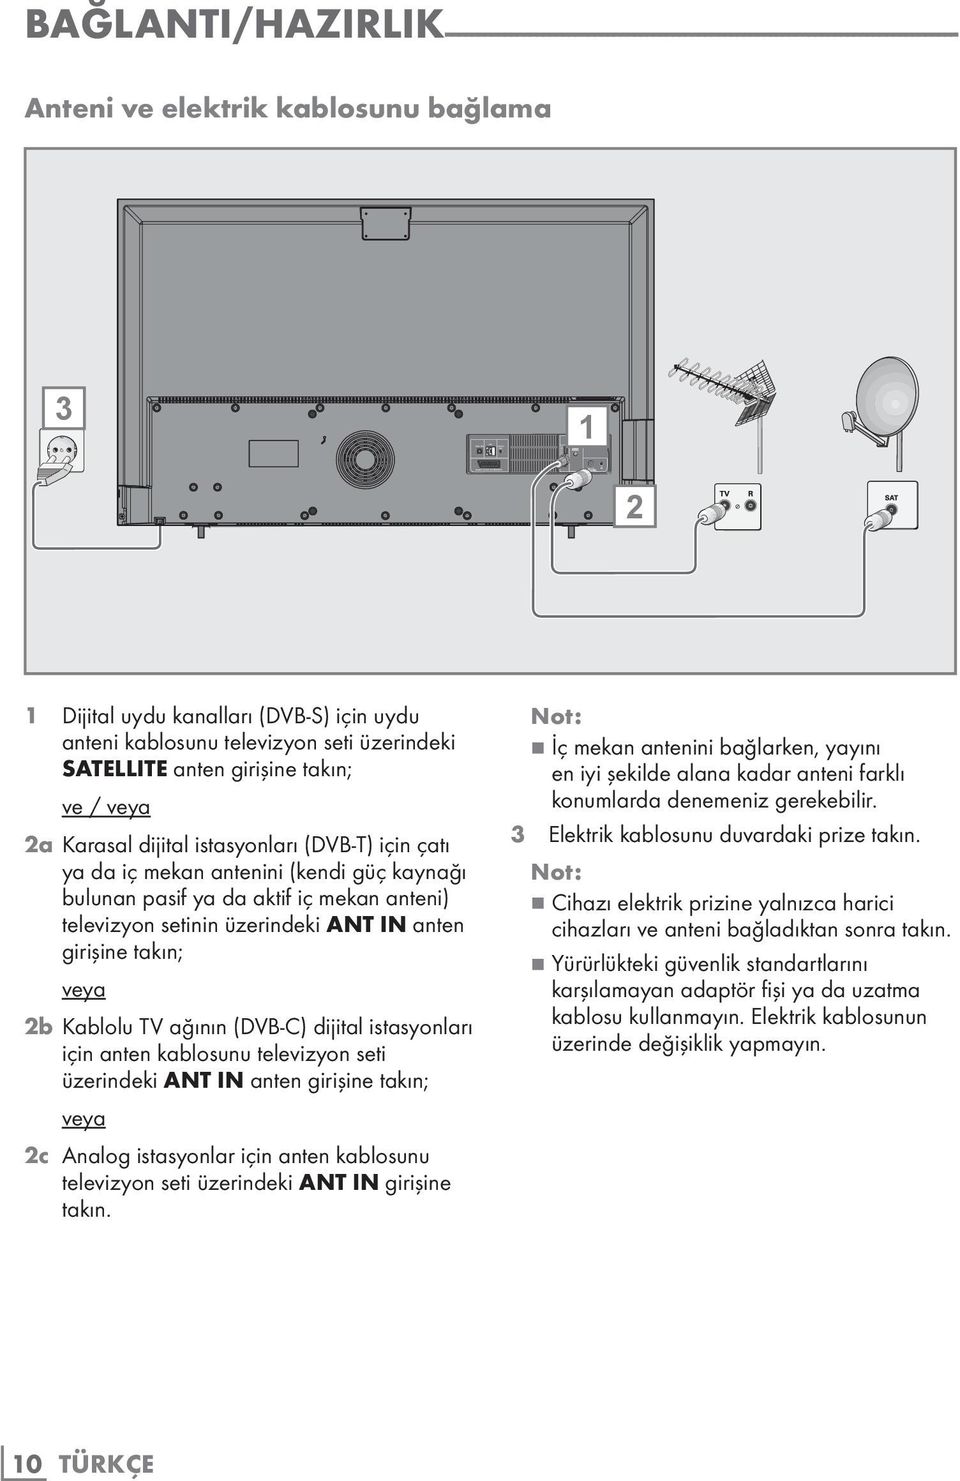 istasyonları (DVB-T) için çatı ya da iç mekan antenini (kendi güç kaynağı bulunan pasif ya da aktif iç mekan anteni) televizyon setinin üzerindeki ANT IN anten girişine takın; veya 2b Kablolu TV